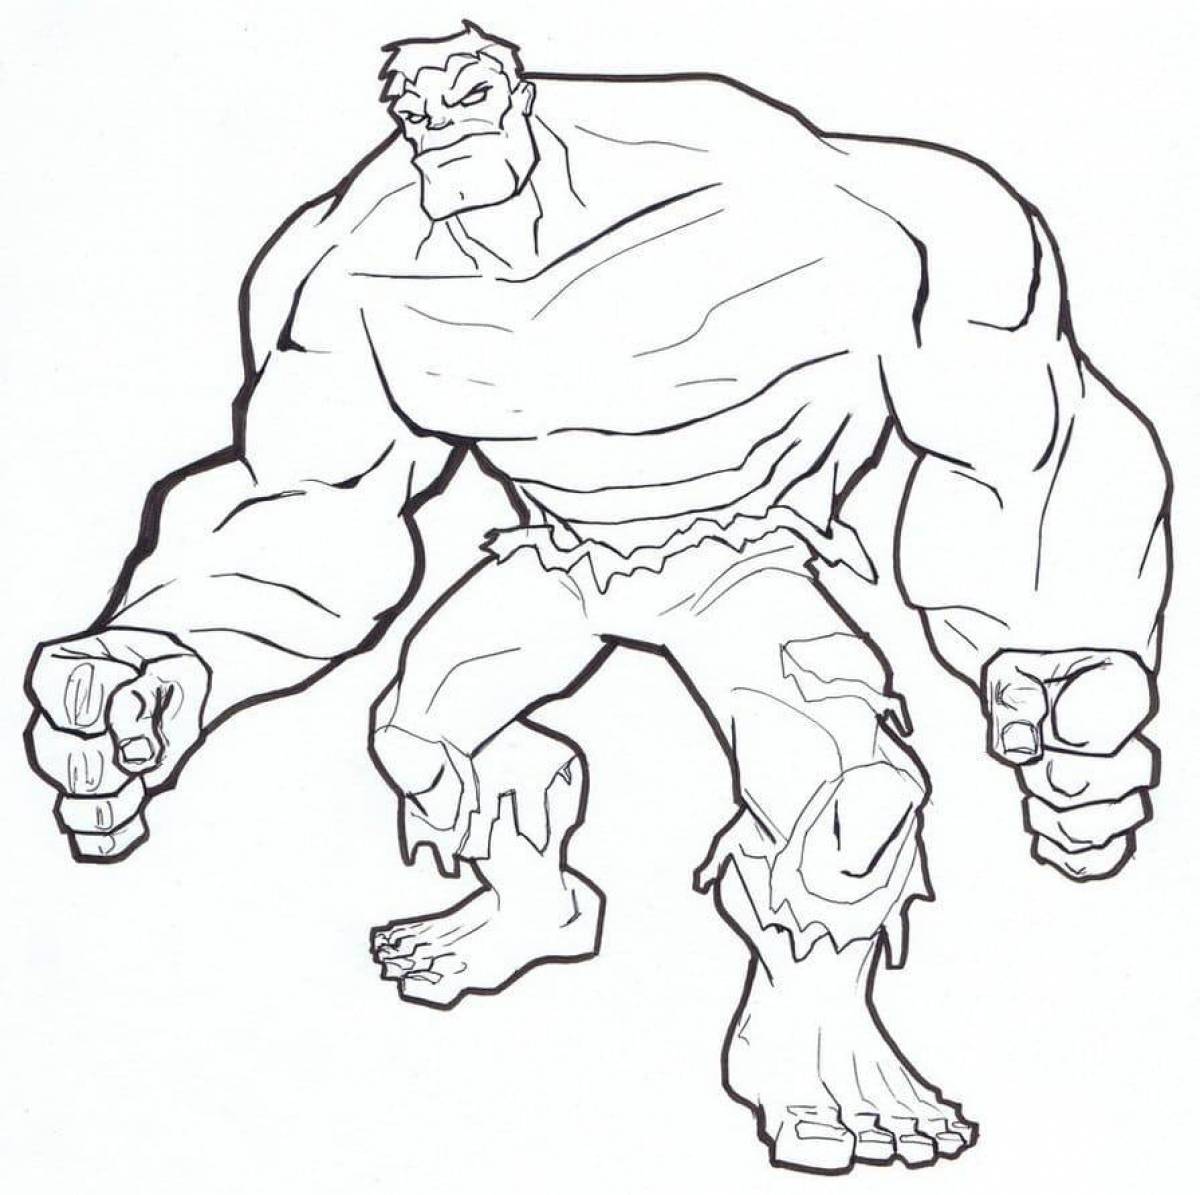 Fun Hulk coloring book for kids